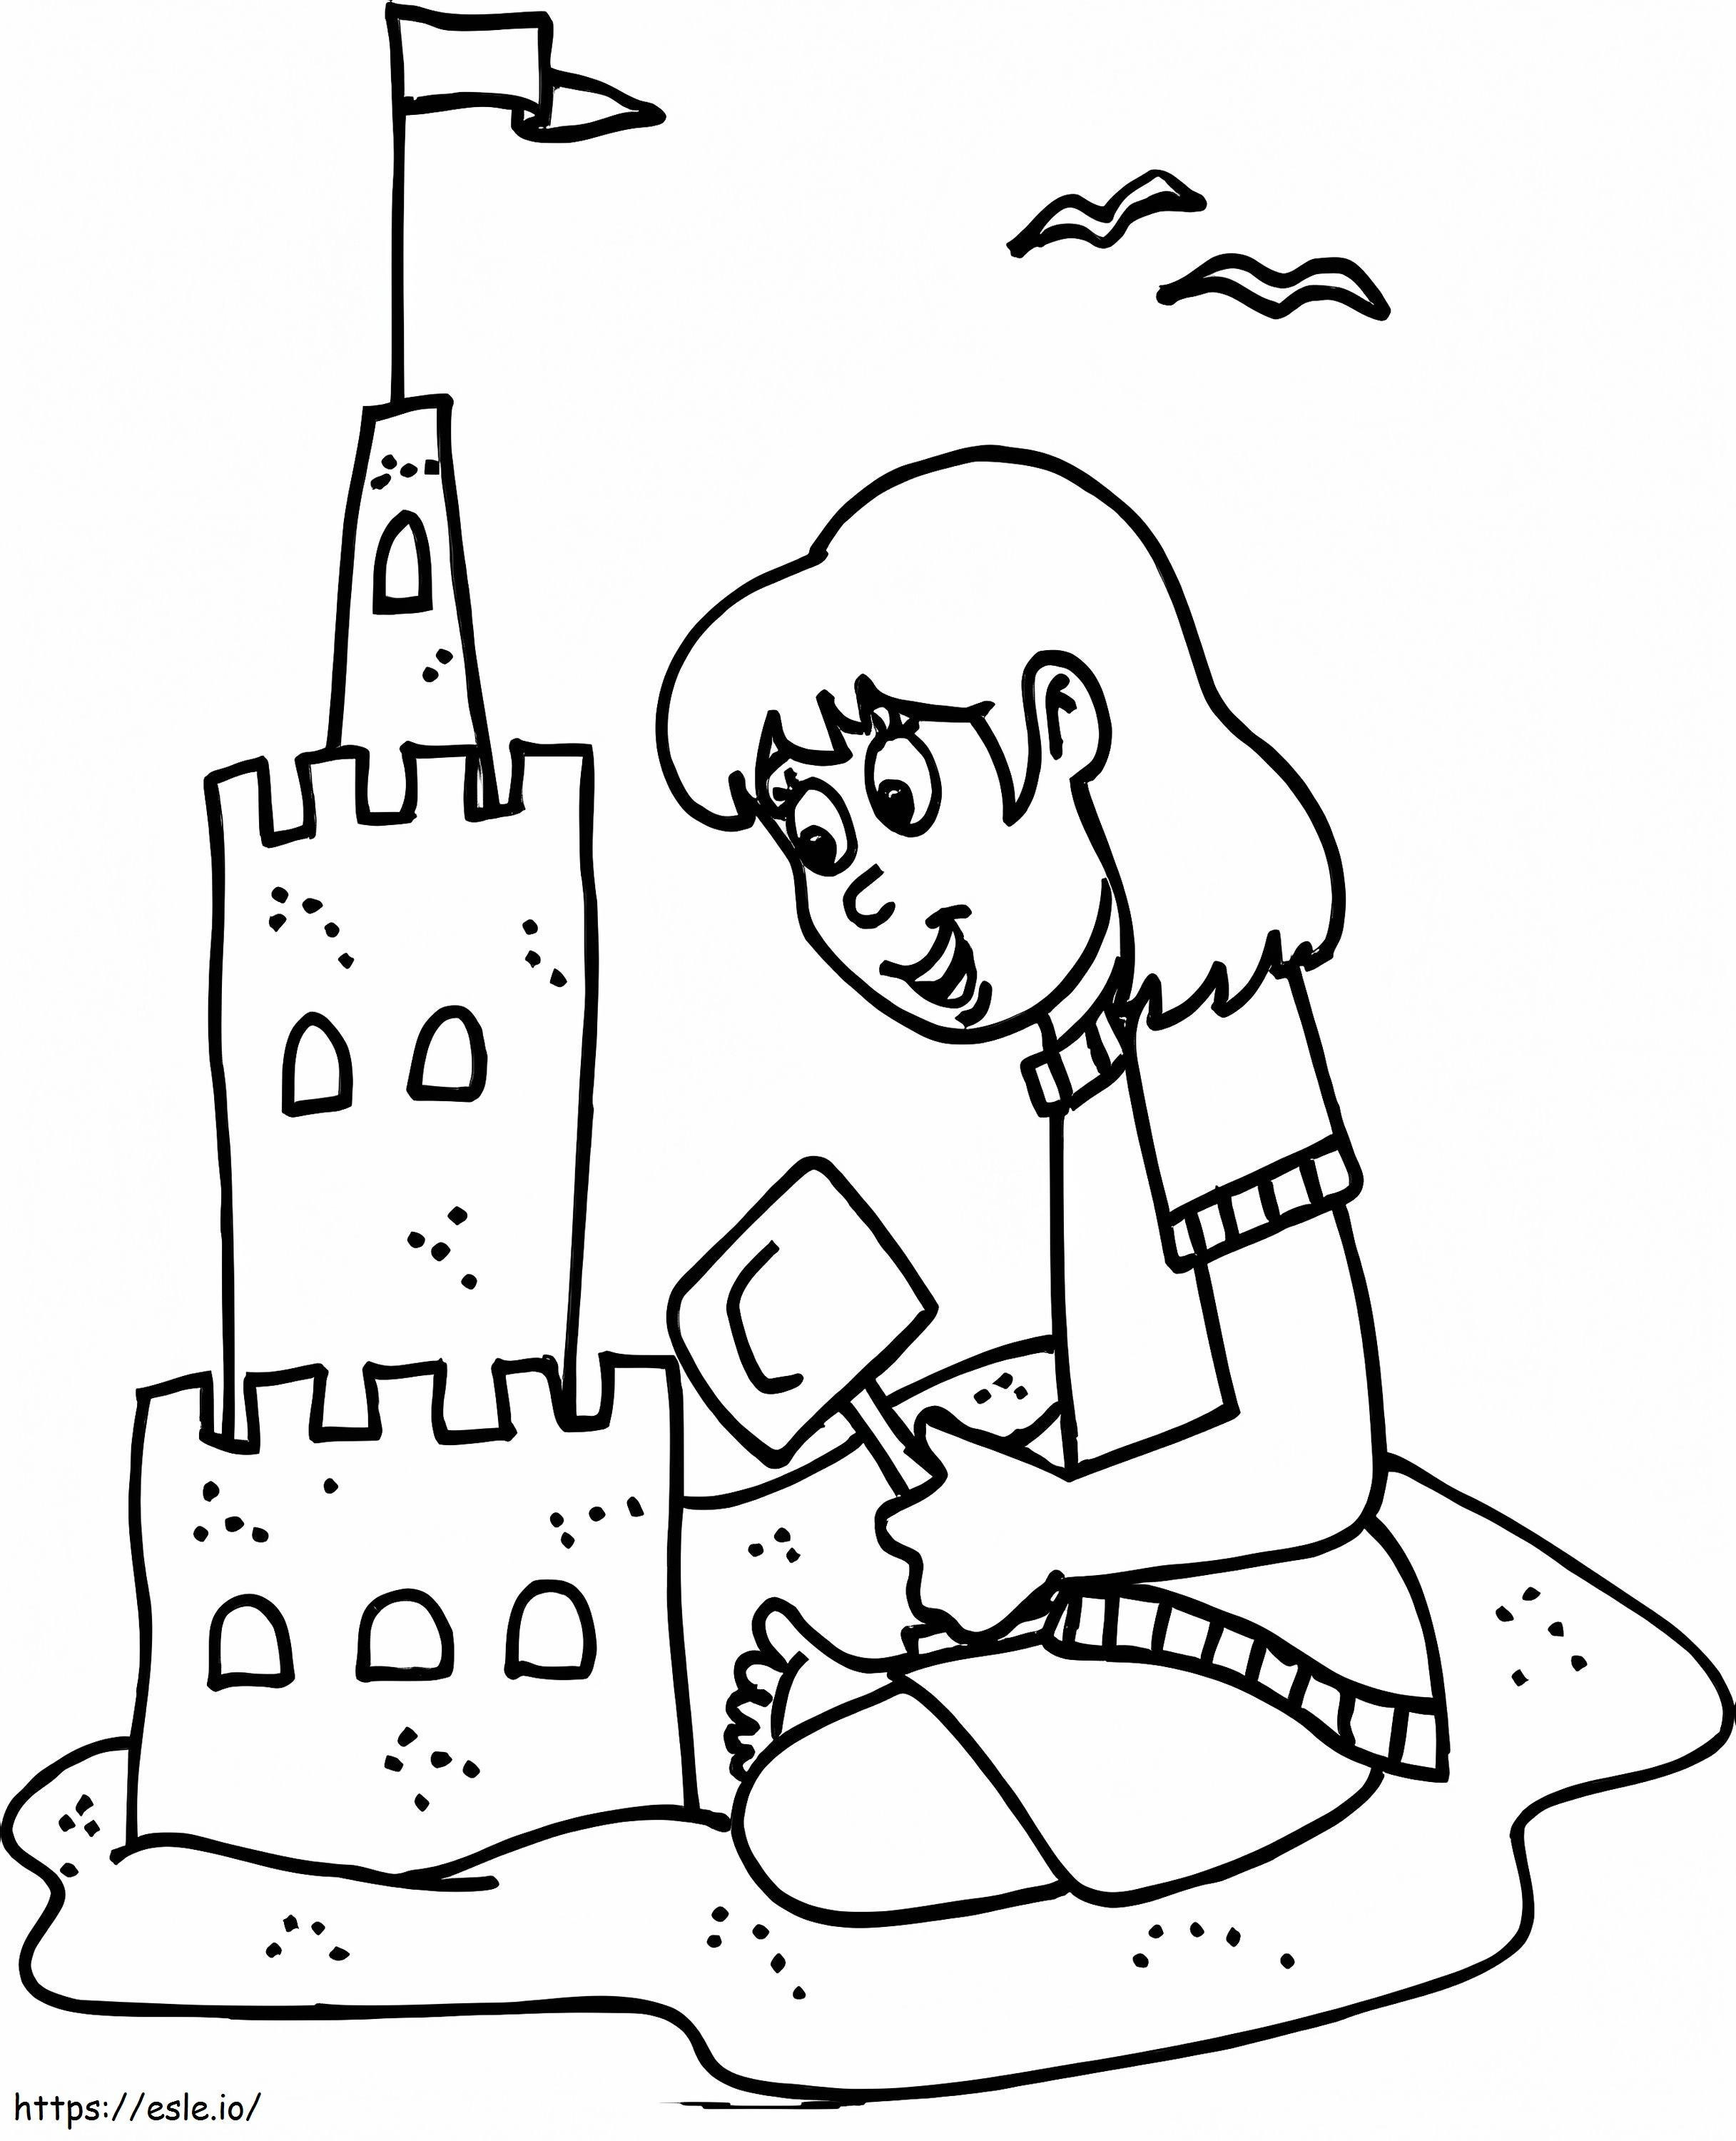 Dziewczyna budująca zamek z piasku kolorowanka